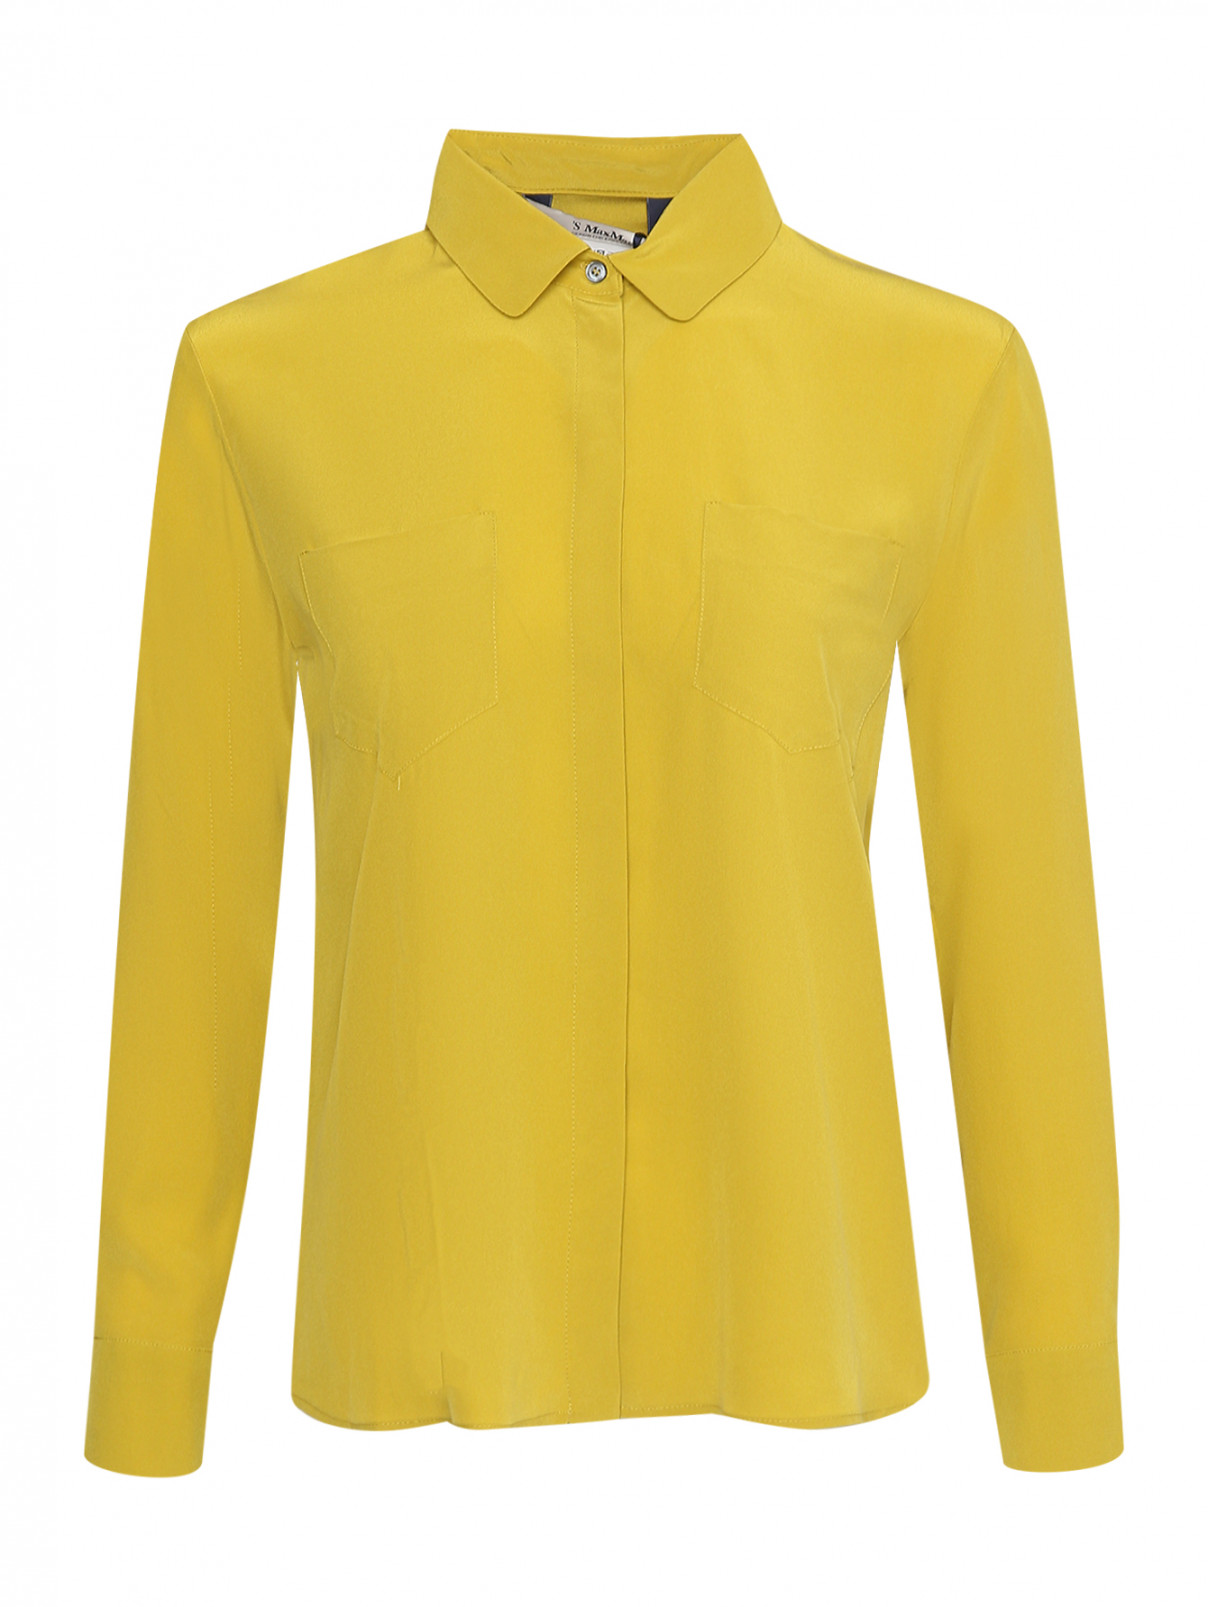 Однотонная блуза с карманами Max Mara  –  Общий вид  – Цвет:  Желтый